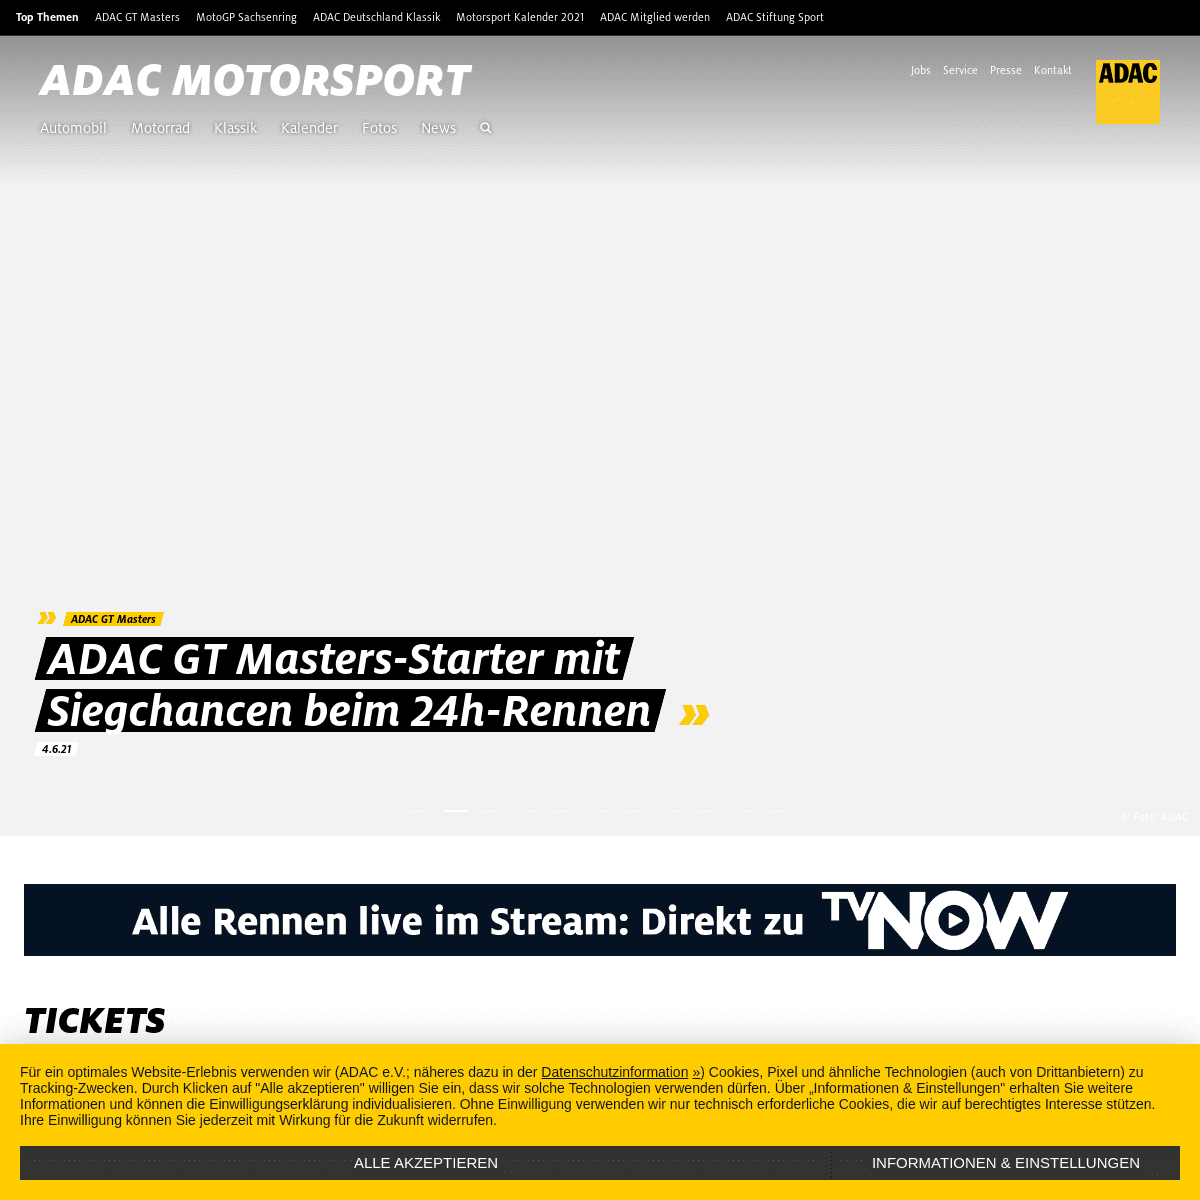 A complete backup of https://adac-motorsport.de